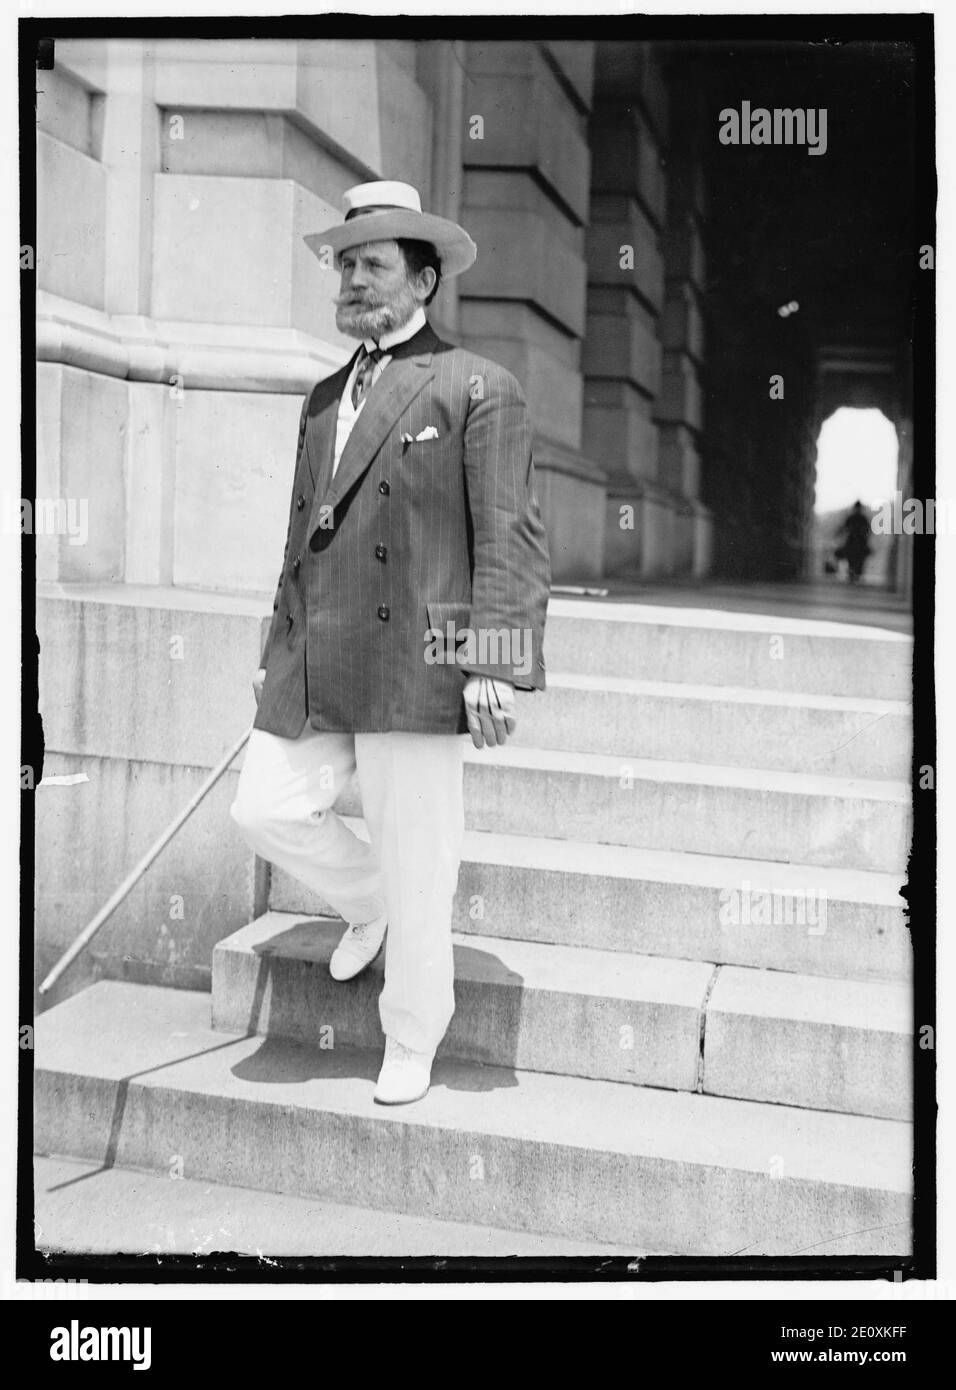 LEWIS, JAMES HAMILTON. REP. FROM WASHINGTON, 1897-1899; SENATOR FROM ILLINOIS, 1913-1919, 1931- Stock Photo